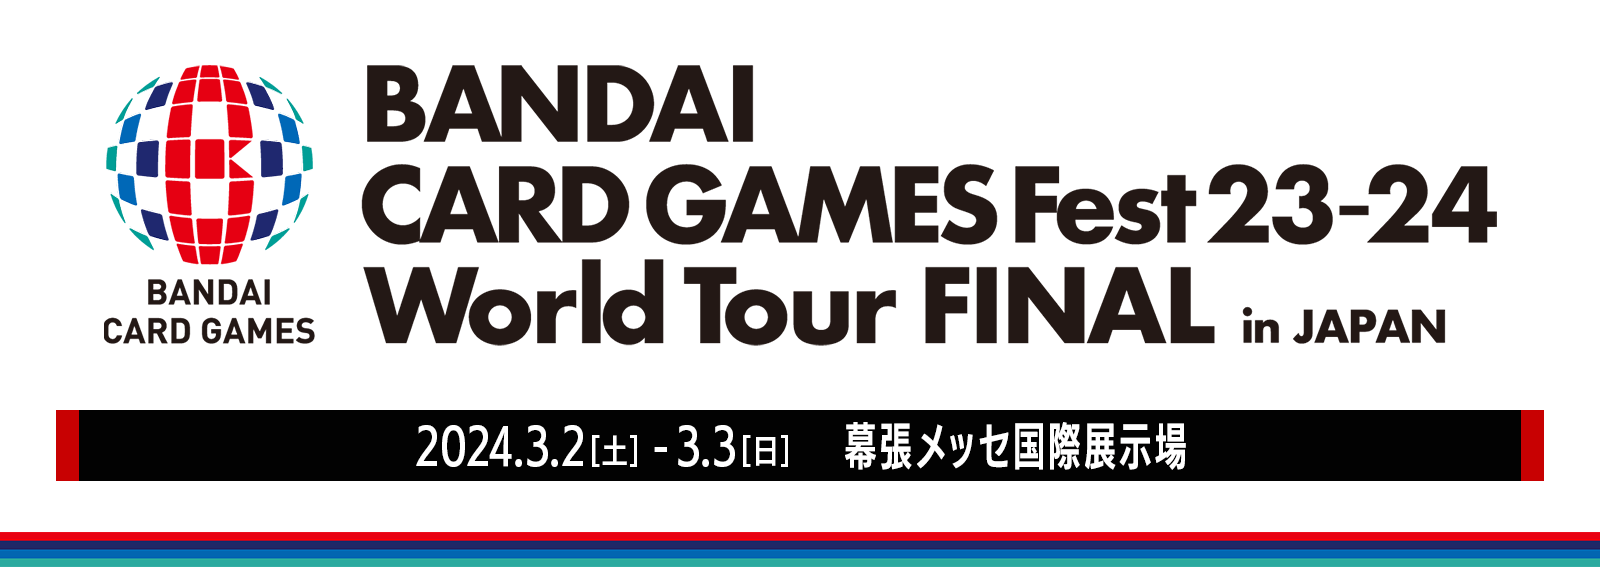 終了]BANDAI CARD GAMES Fest23-24 World Tour FINAL in JAPAN 開催 ...